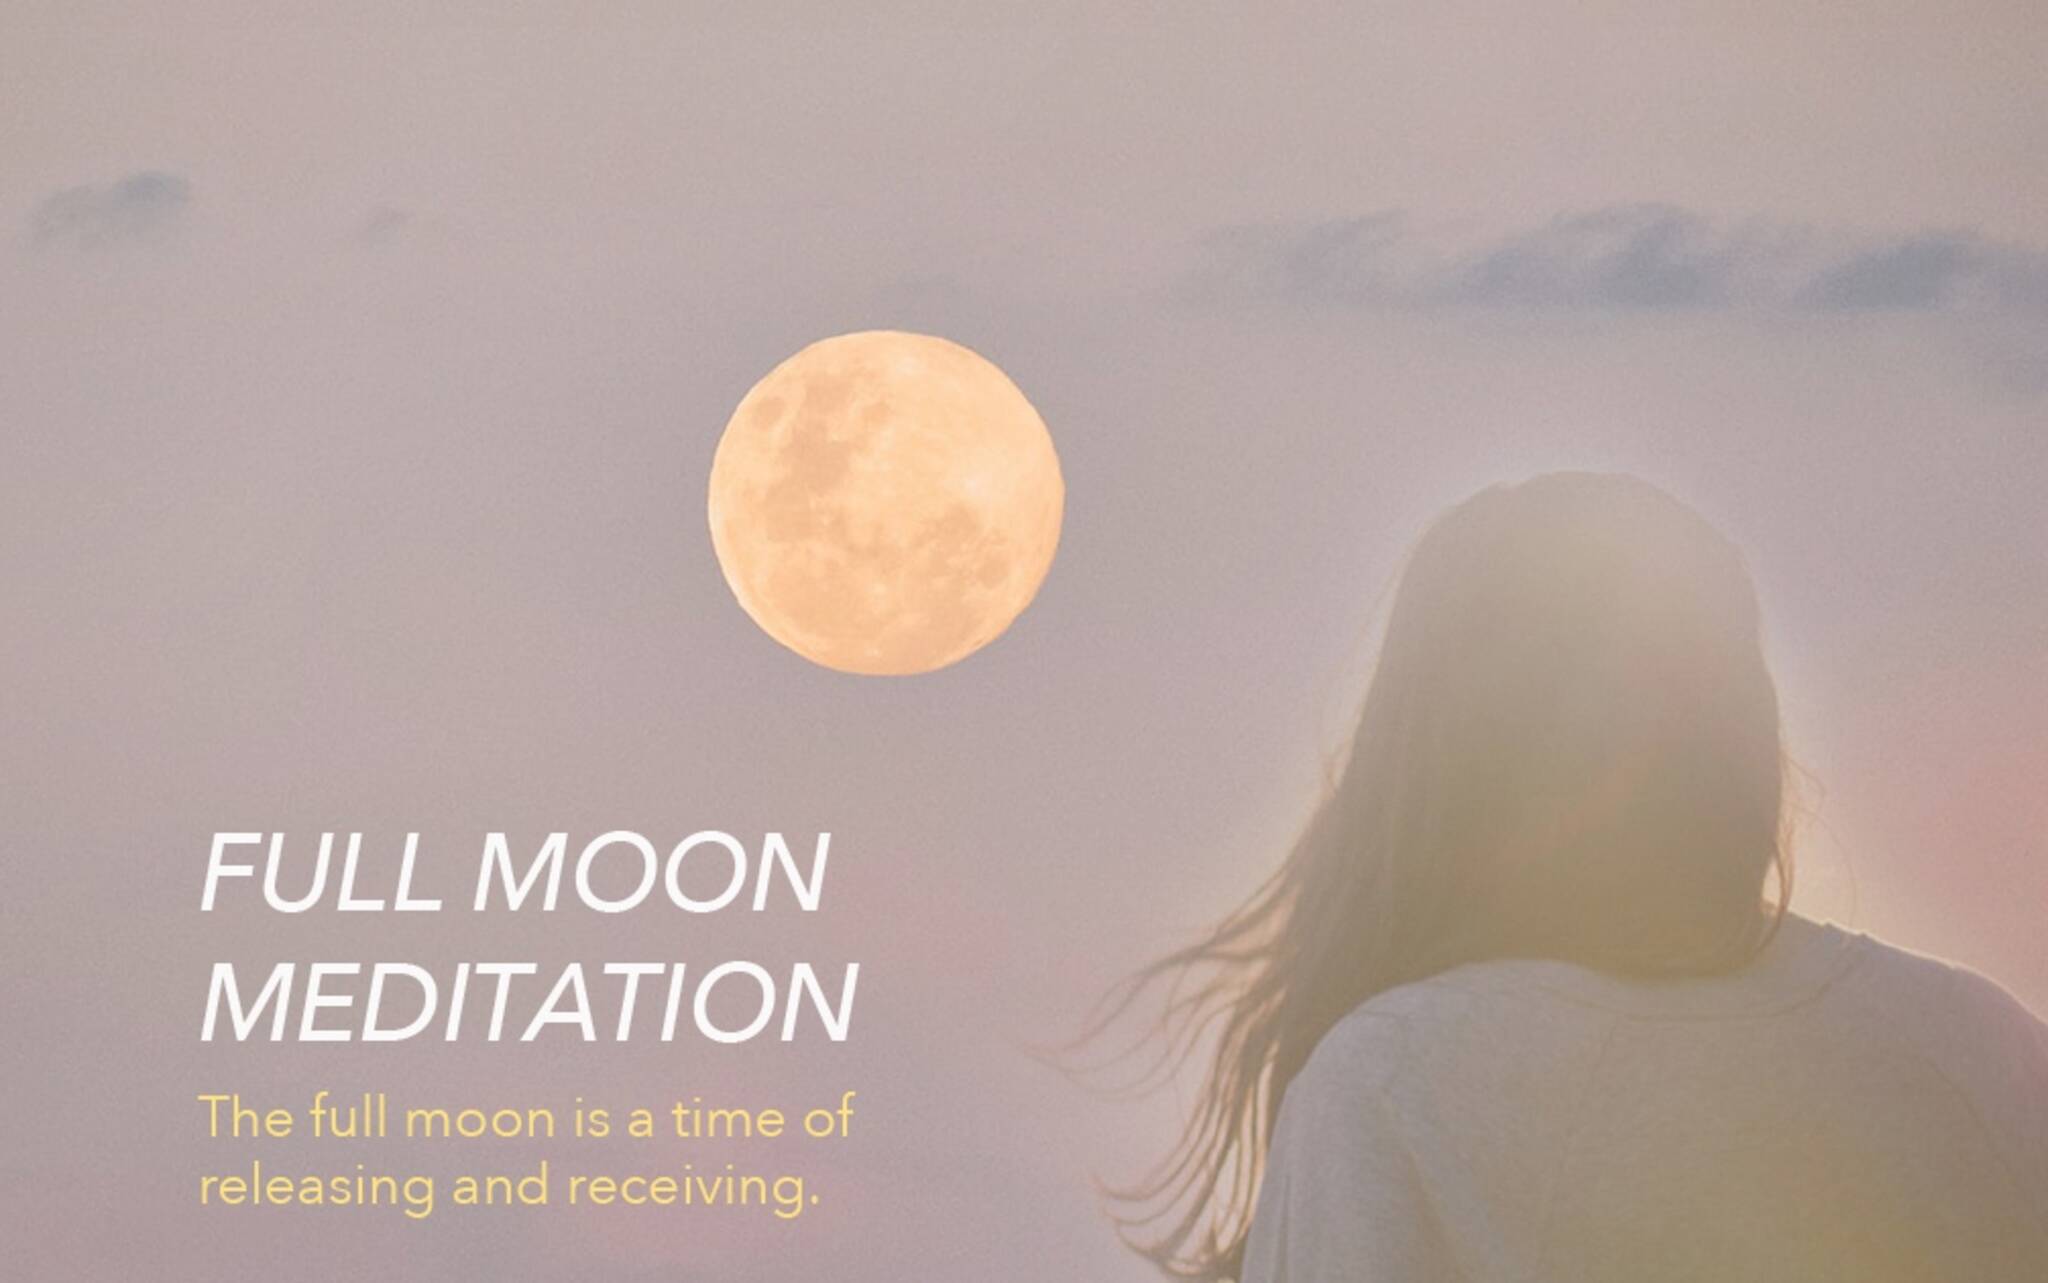 Full Moon Meditation at Yoga Star